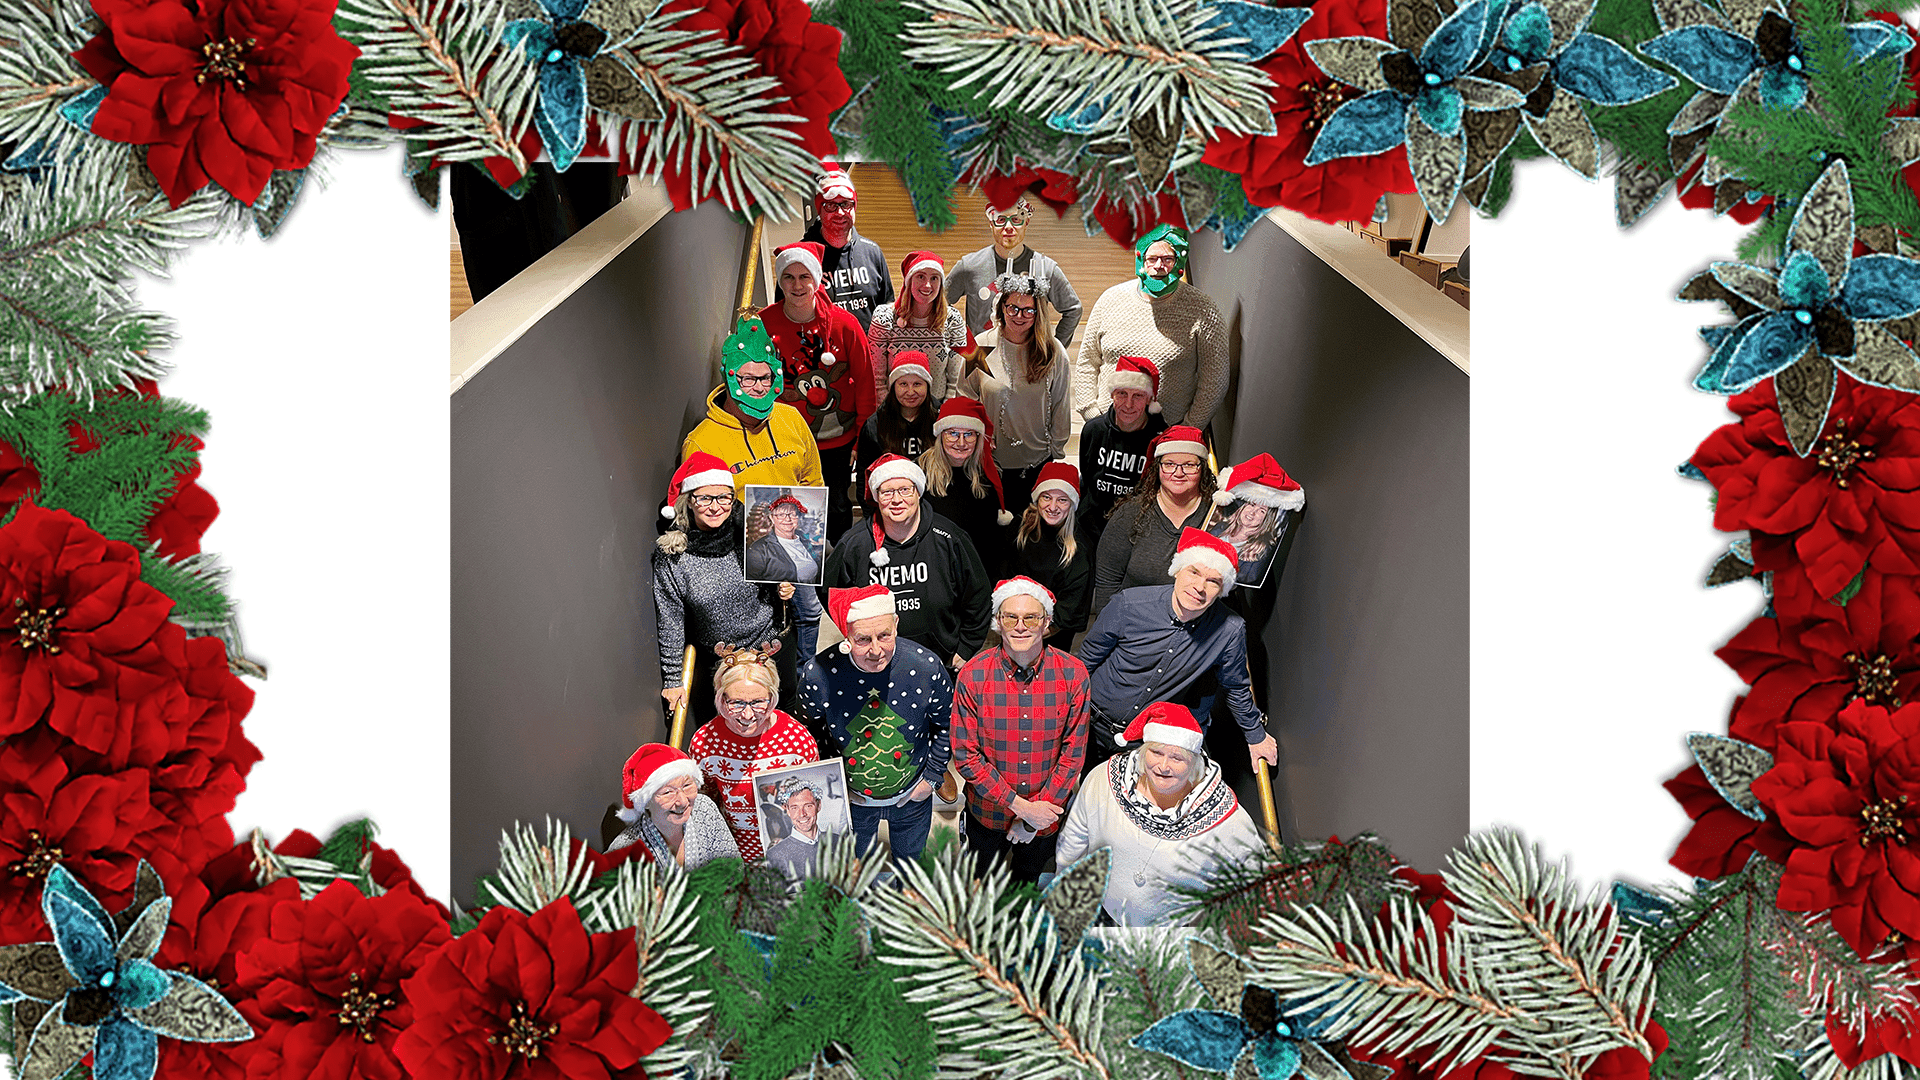 Julkort på personalen på Svemo kansli klädda i jultröjor, tomteluvor och diverse andra juliga huvudbonader.